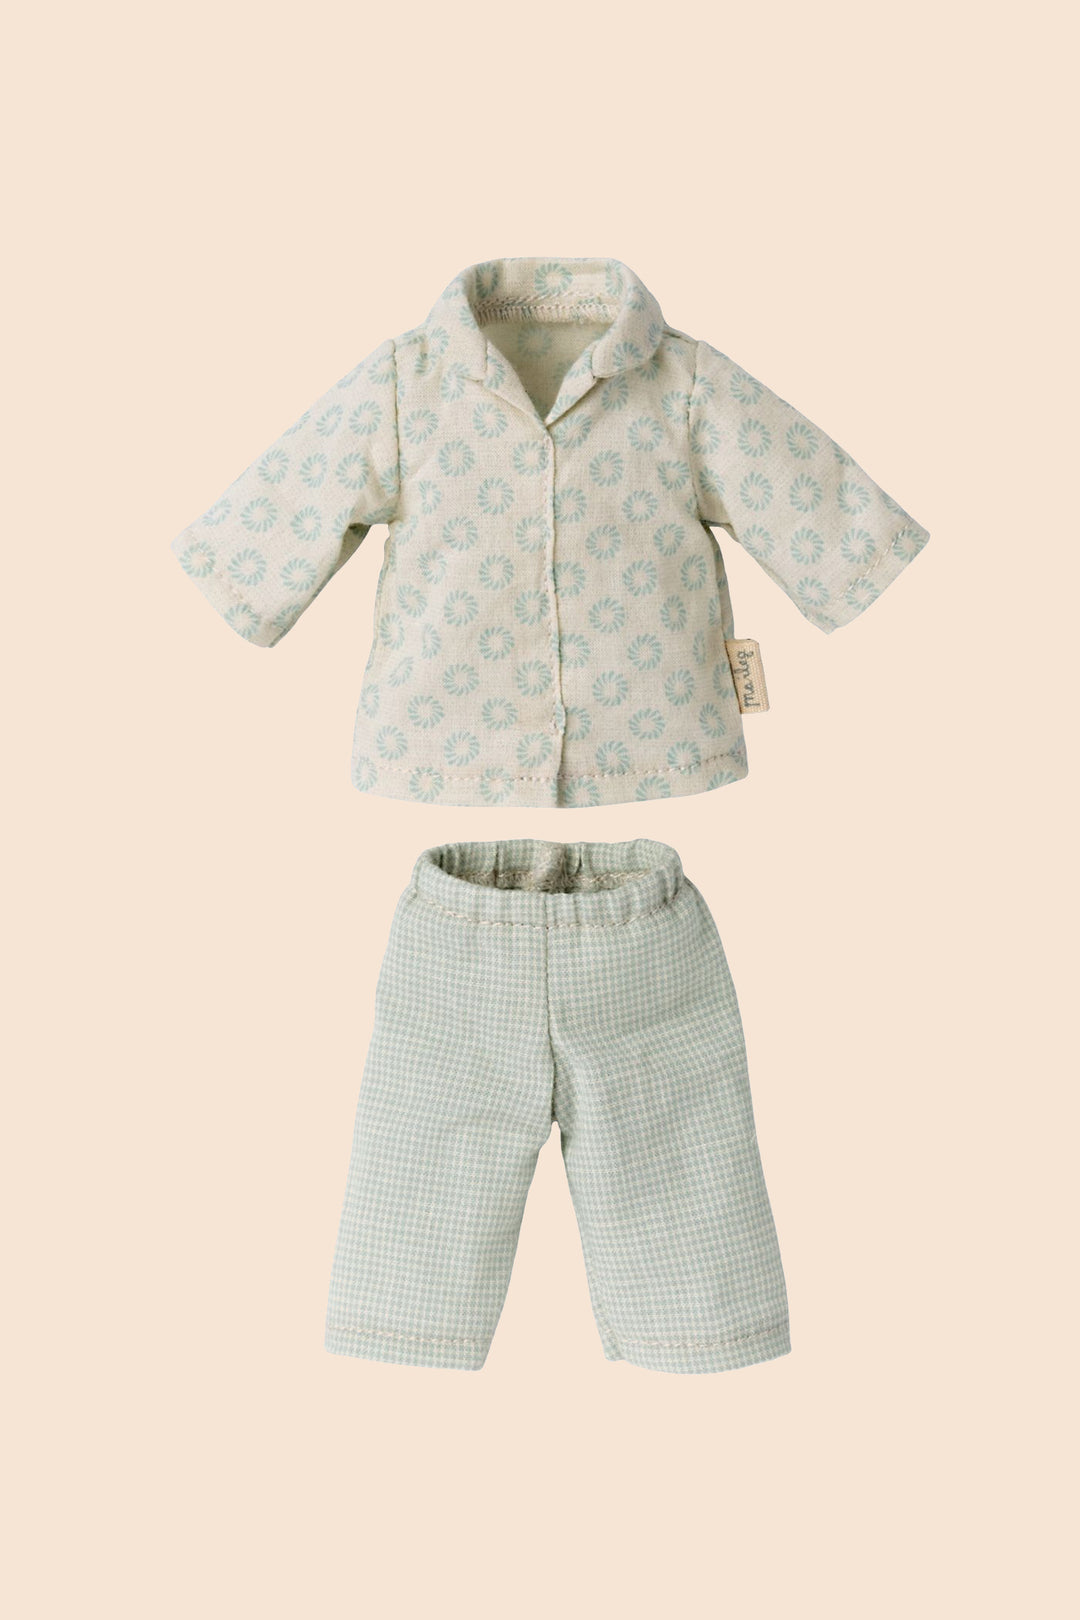 Maileg size 1 clothes - Pyjamas